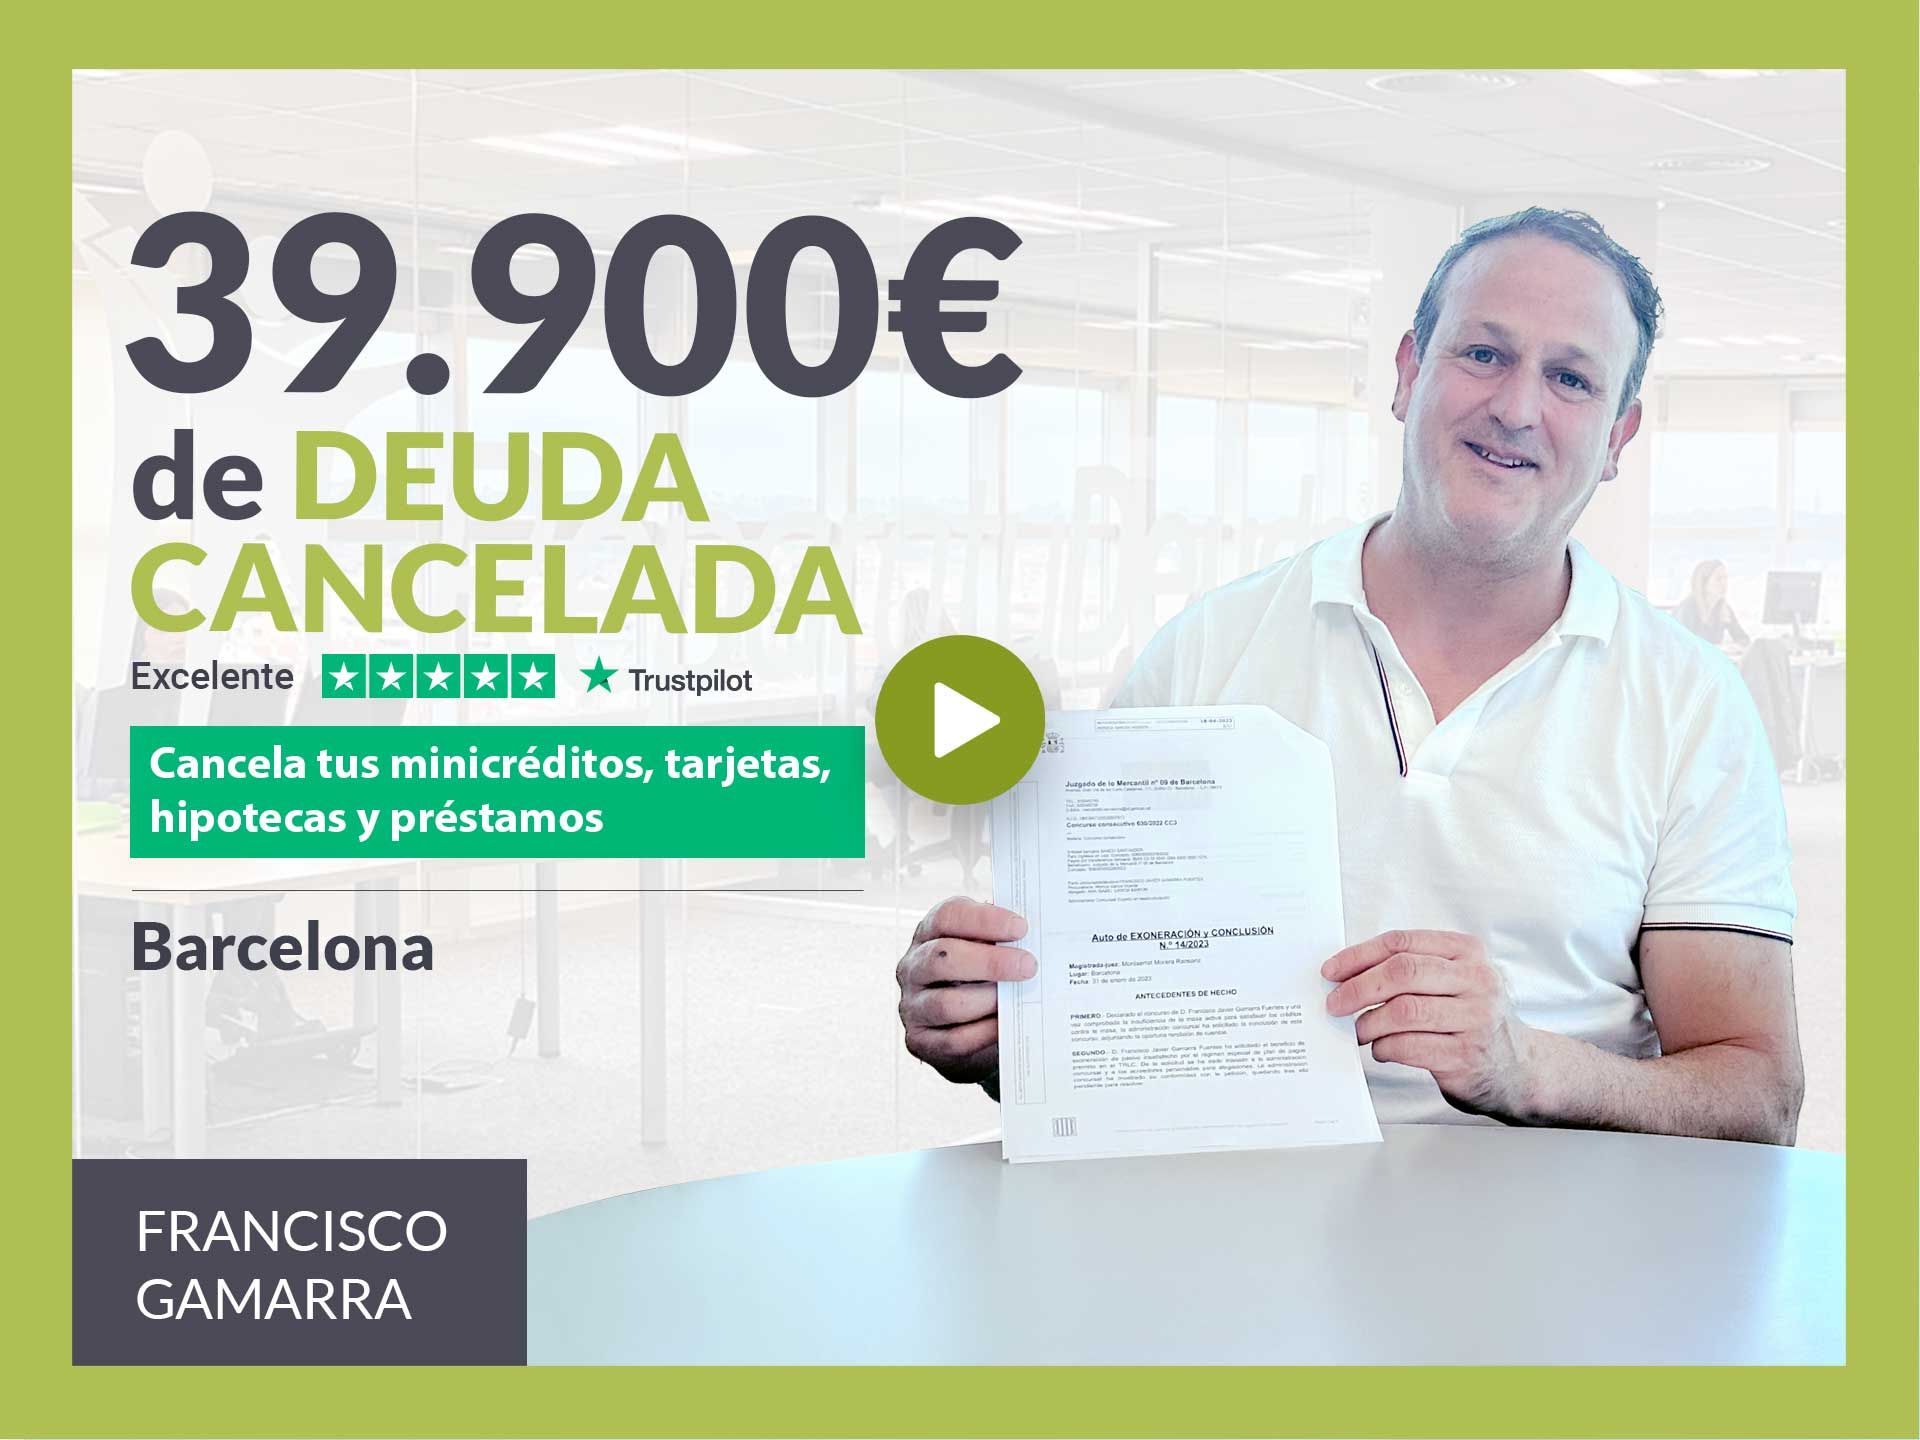 Repara tu Deuda Abogados cancela 39.900? en Barcelona (Catalunya) con la Ley de Segunda Oportunidad